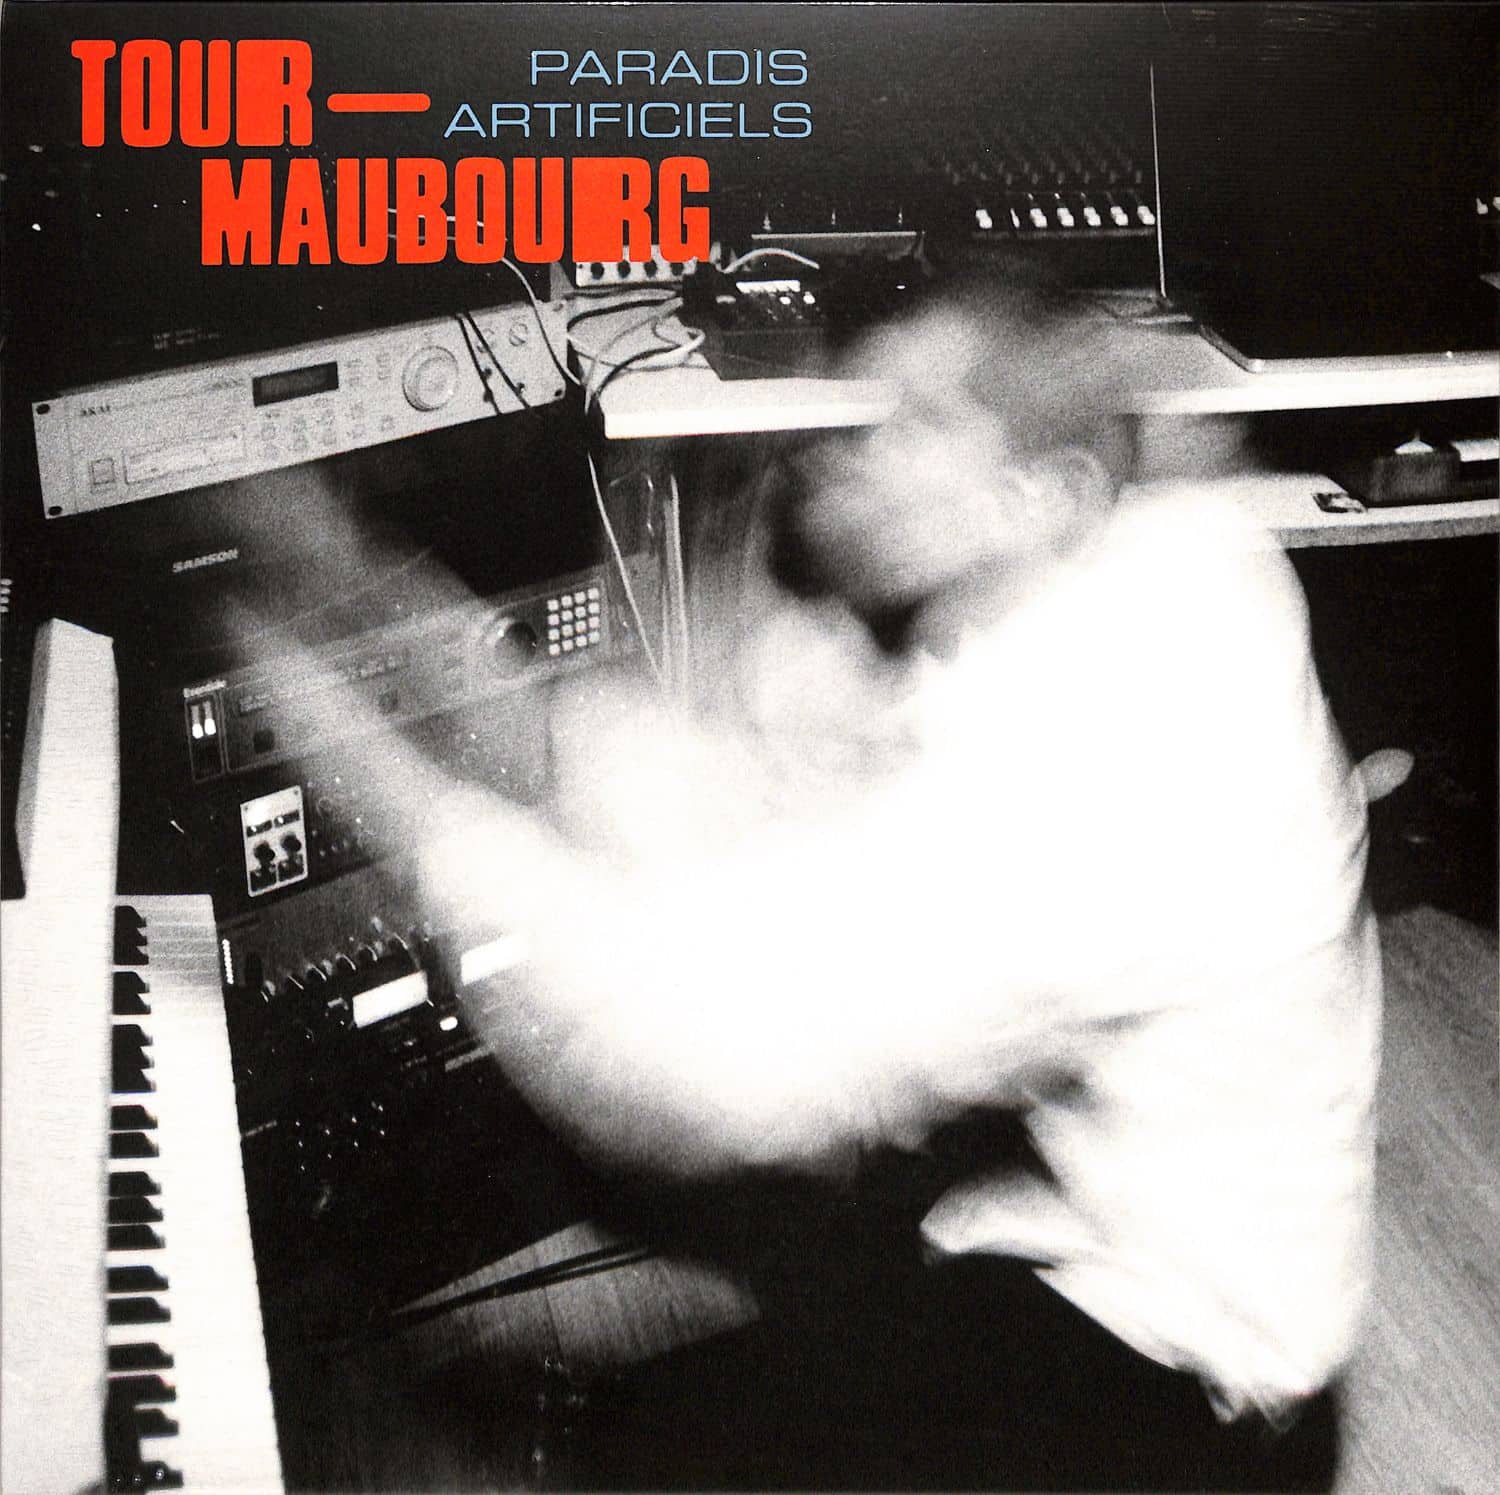 Tour-Maubourg - PARADIS ARTIFICIELS 